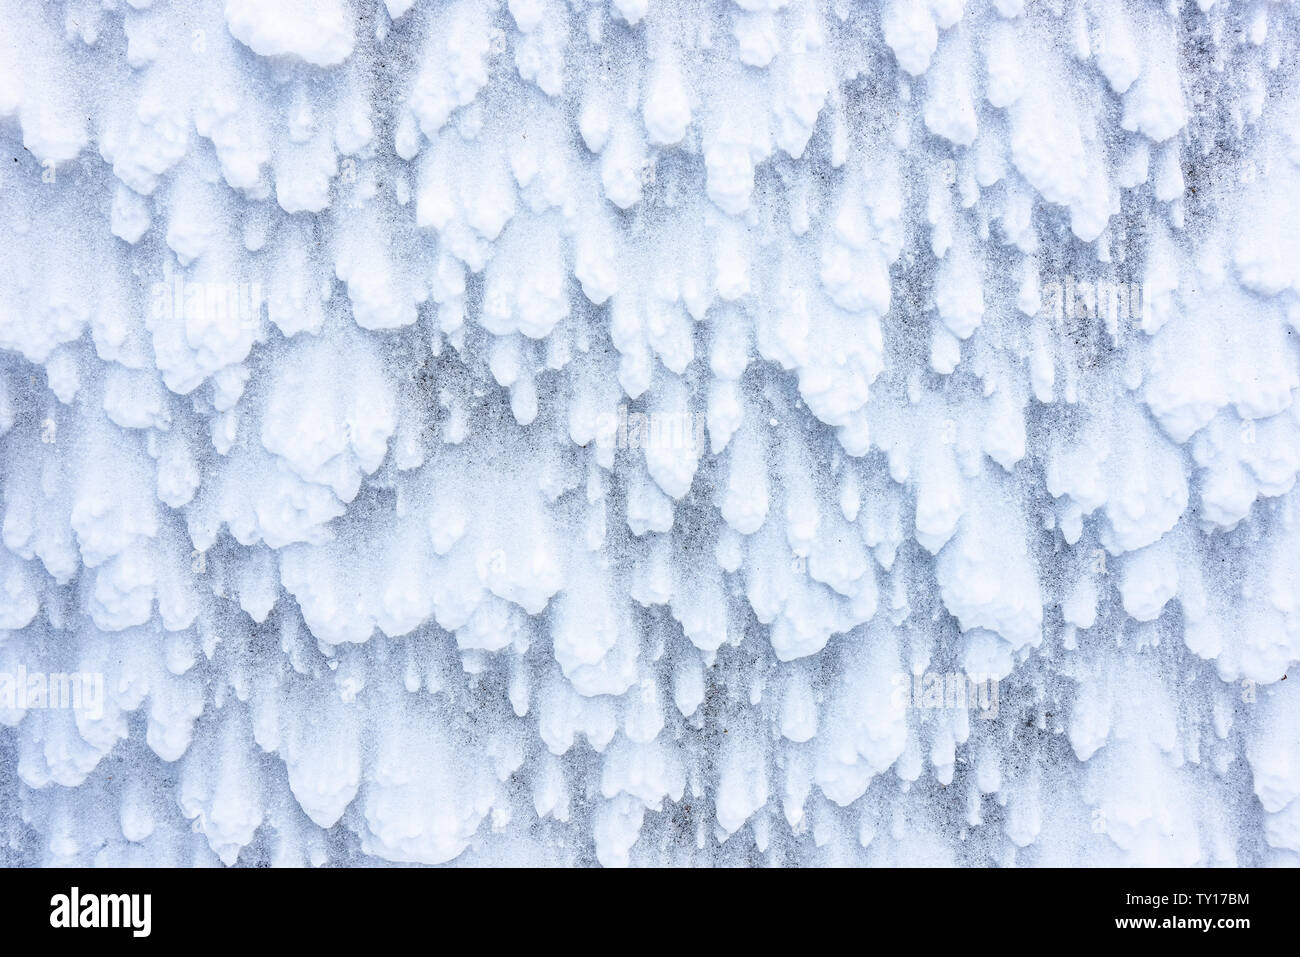 Wind Schnee Muster, Ende Winter Schnee Sturm, östlichen Nordamerika, von Dominique Braud/Dembinsky Foto Assoc Stockfoto